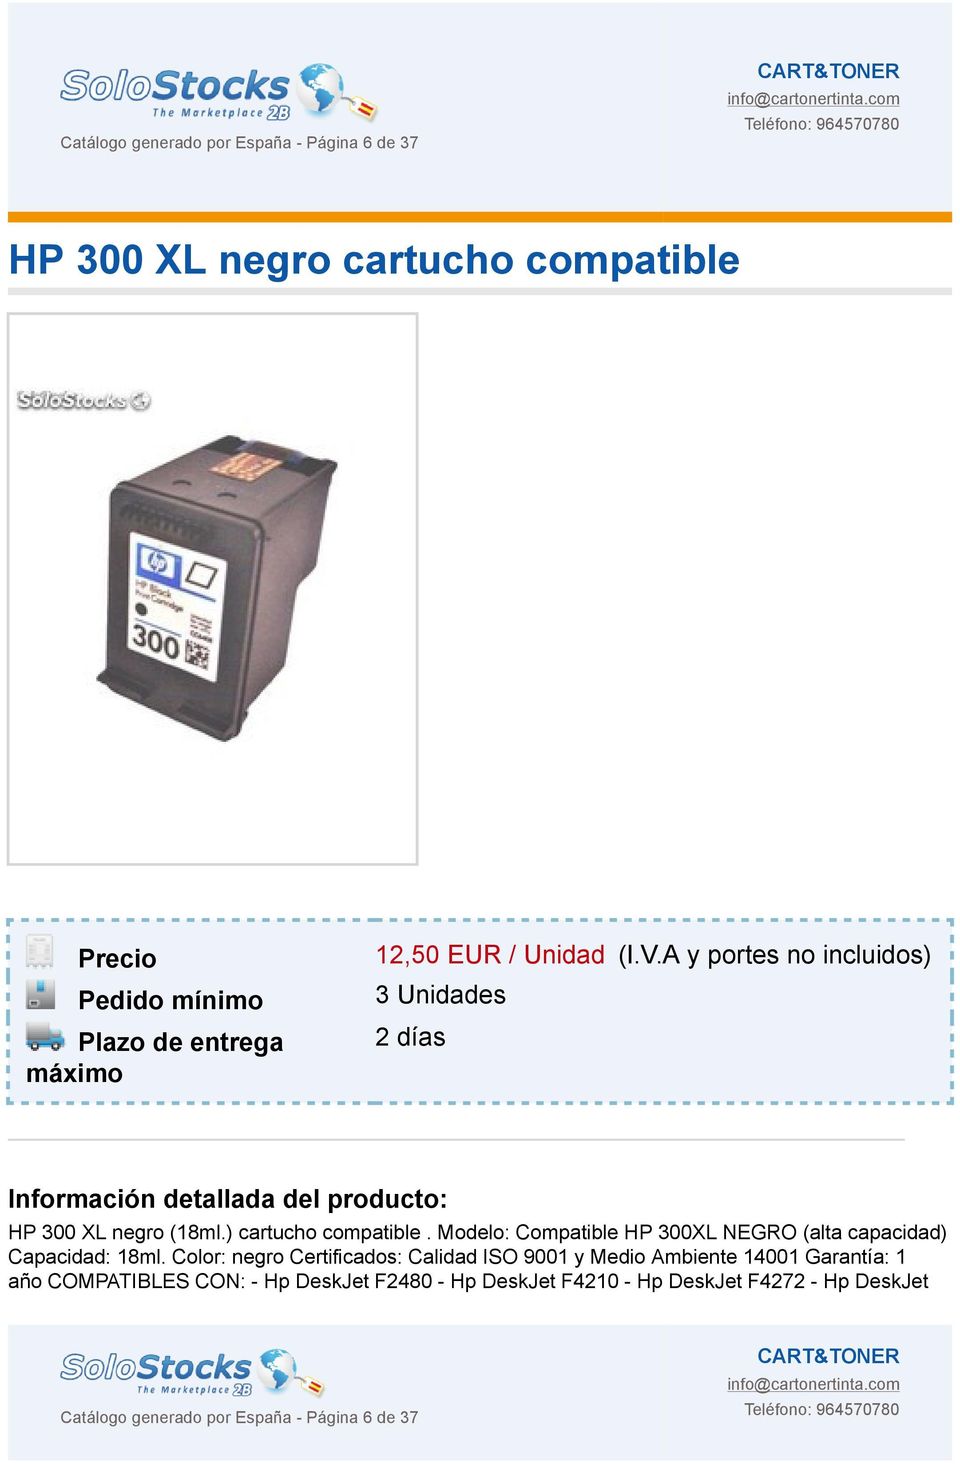 Modelo: Compatible HP 300XL NEGRO (alta capacidad) Capacidad: 18ml.